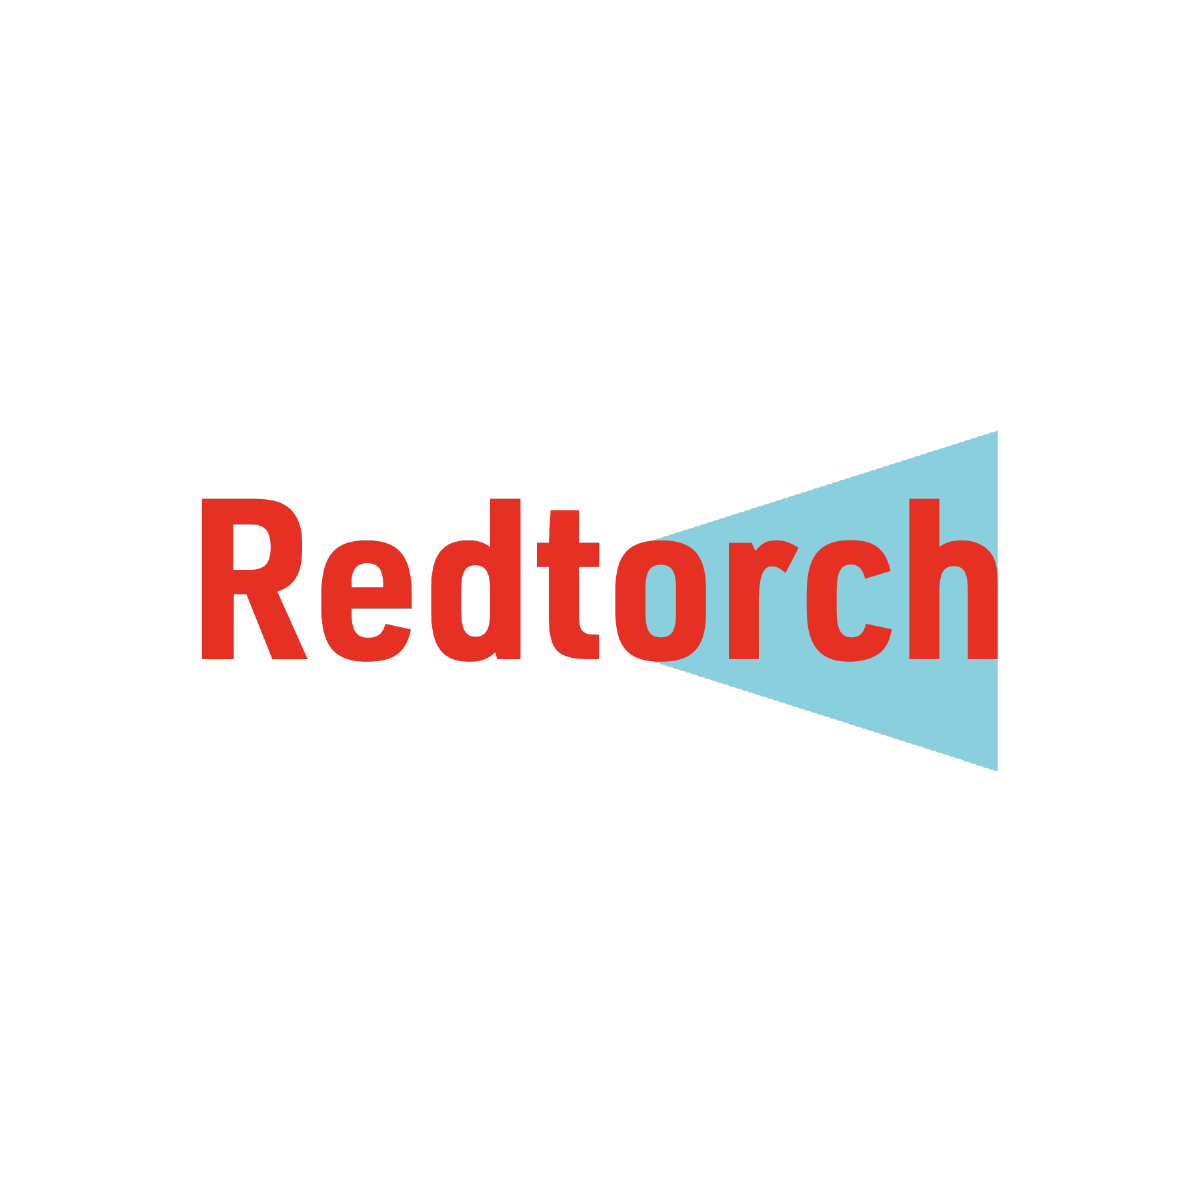 Redtorch